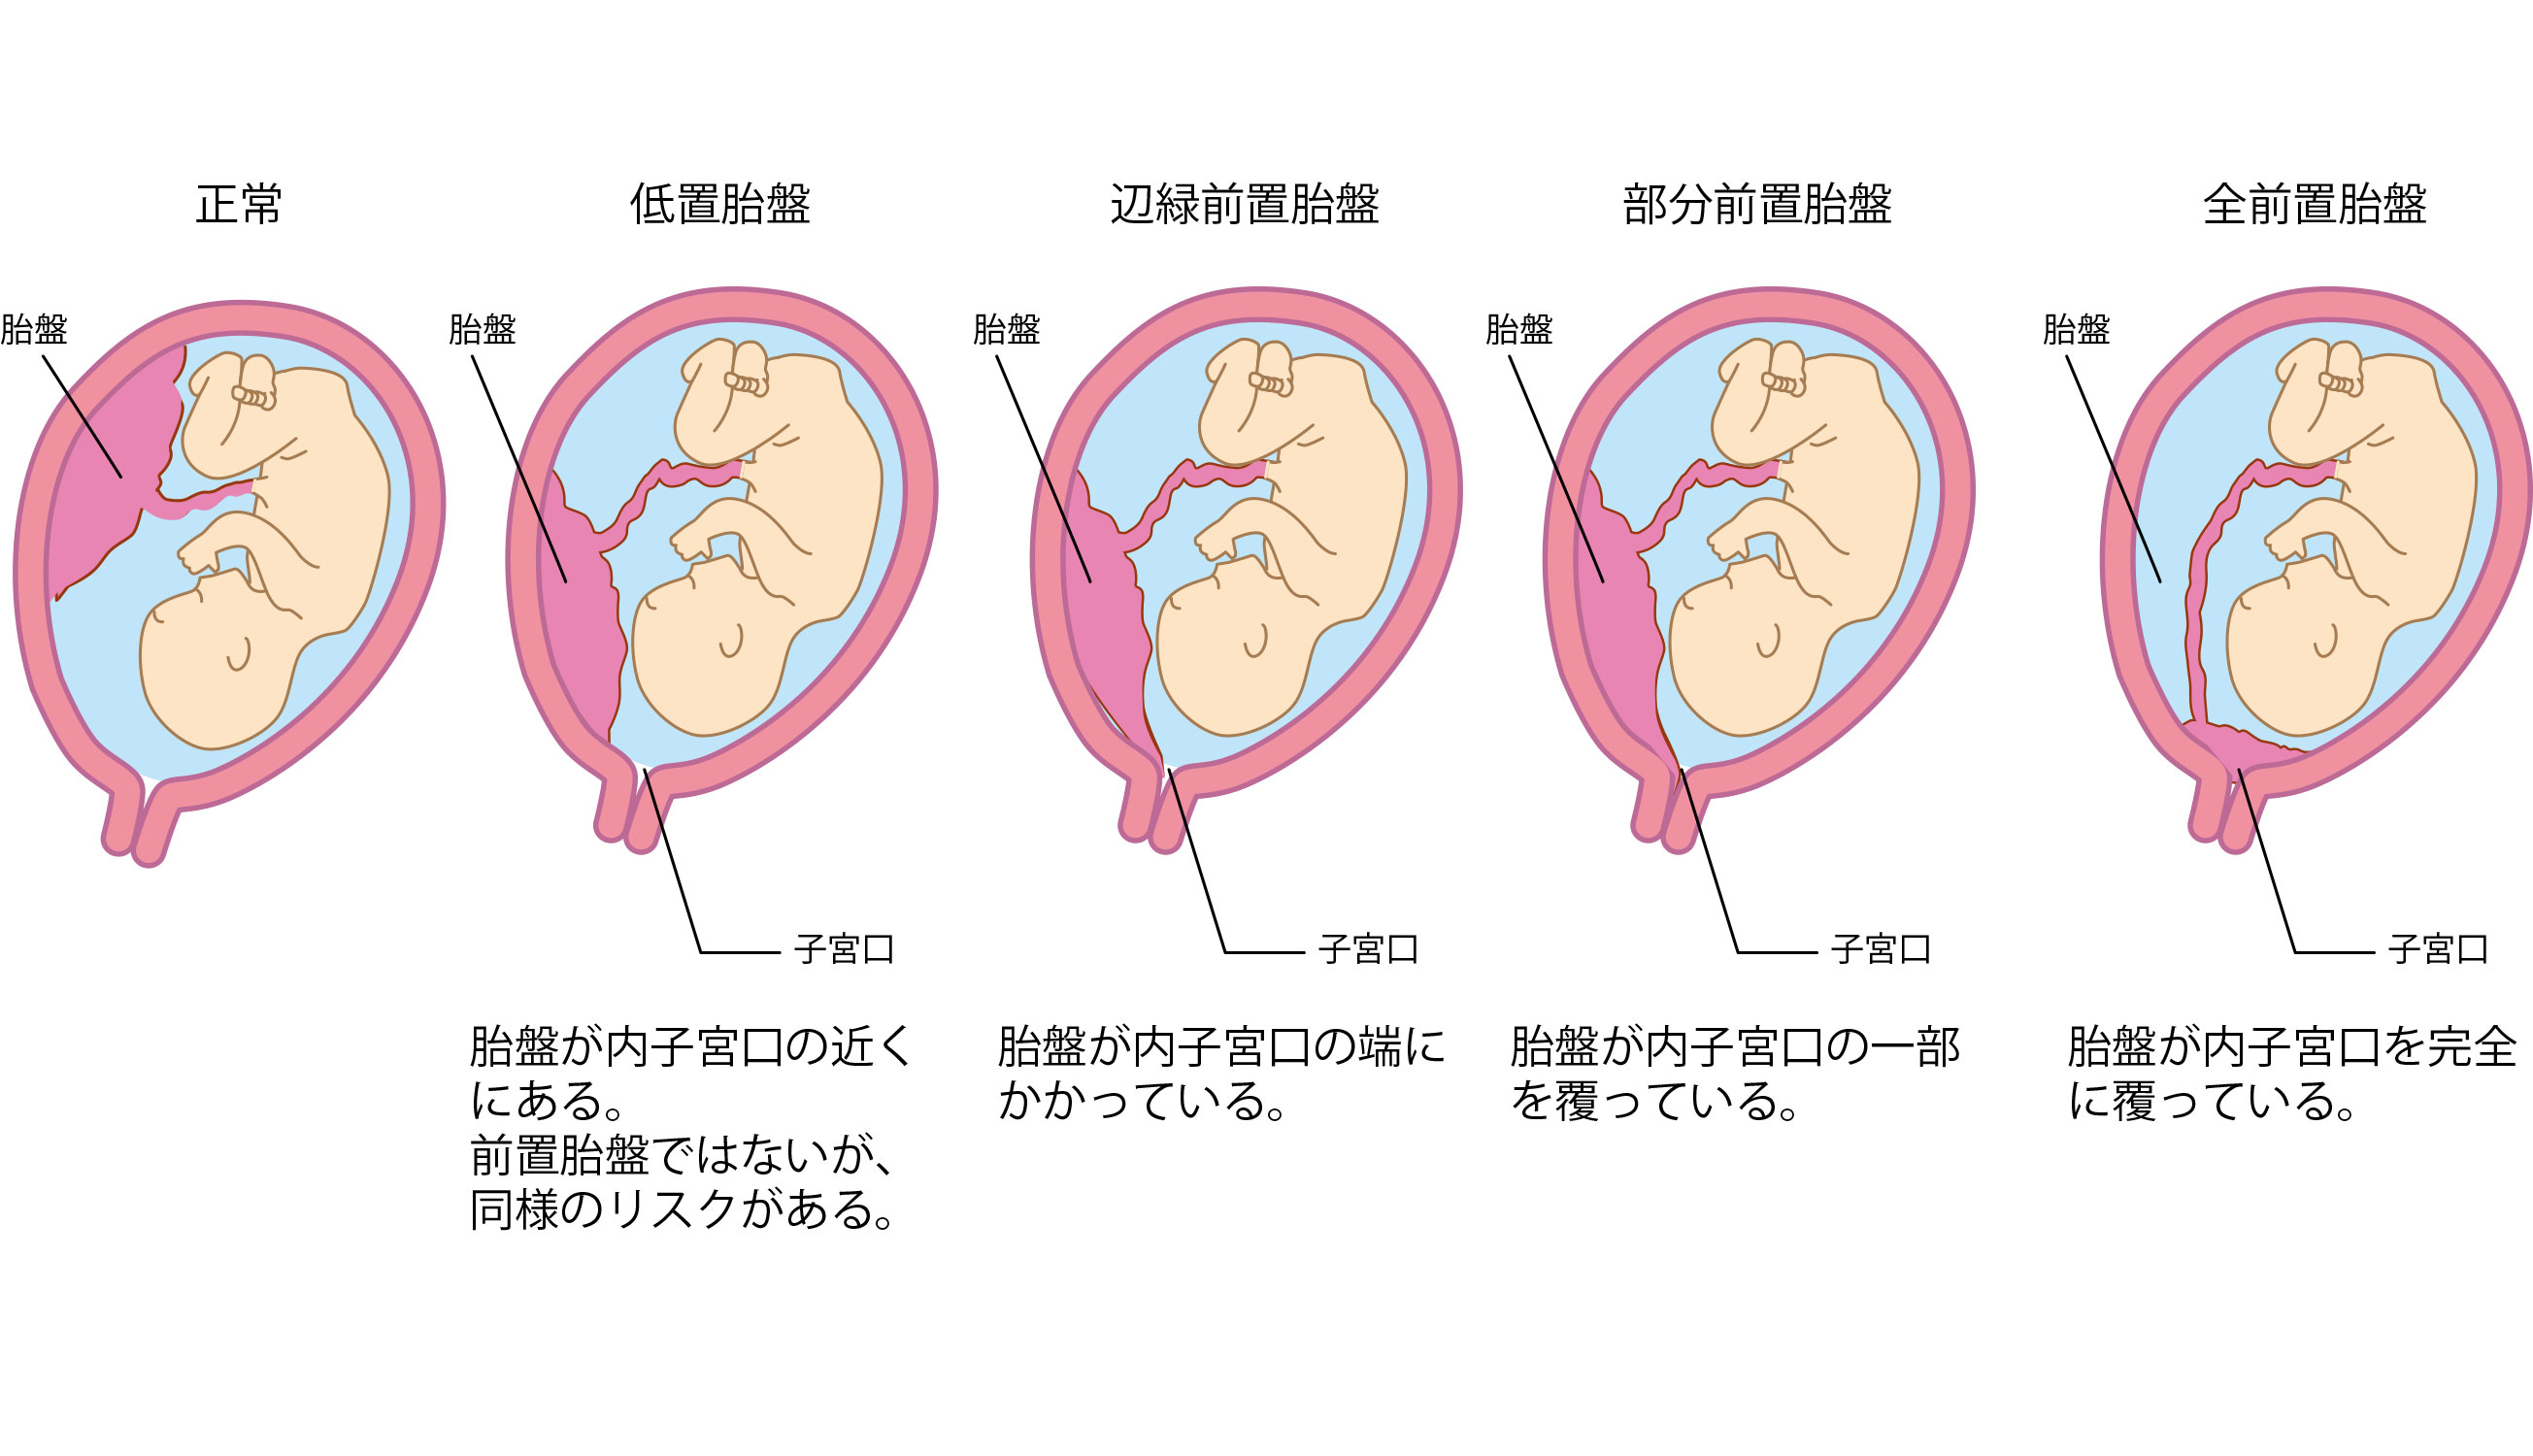 前 置 胎盤 について 正しい の は どれ か